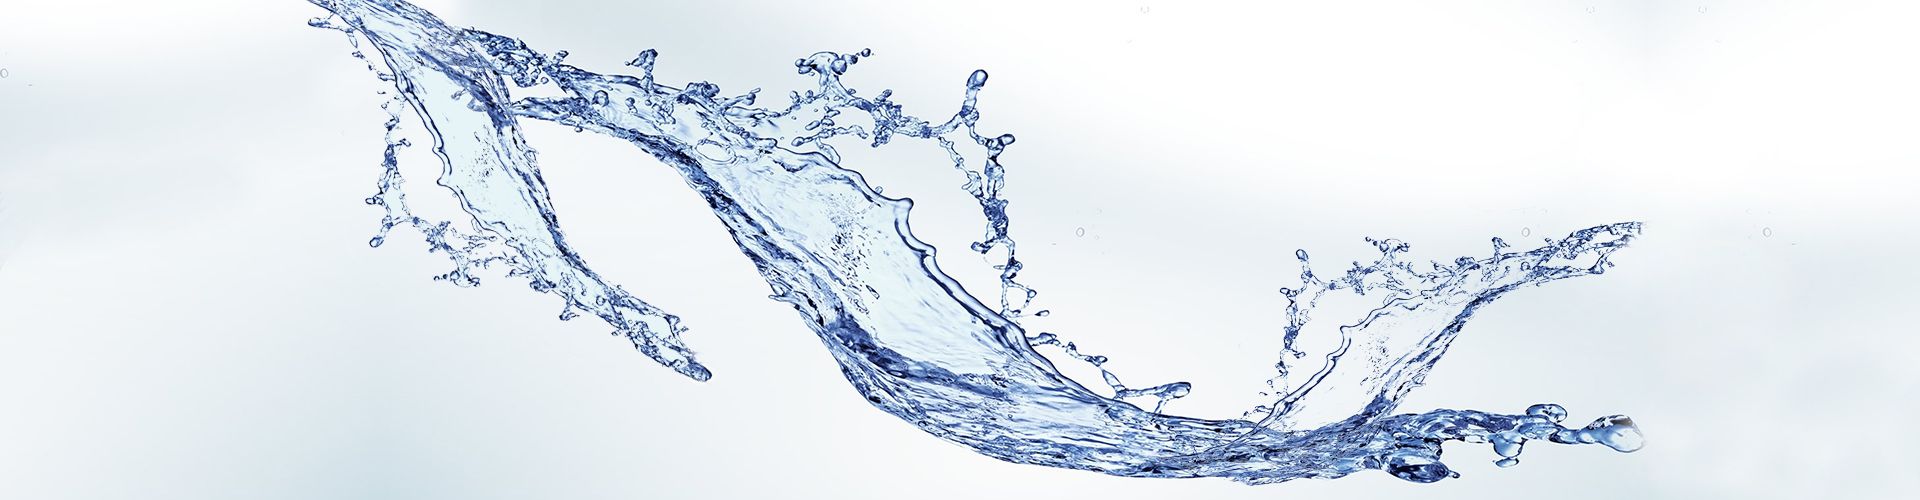 agua-tratada-en-biodigestor-asajet